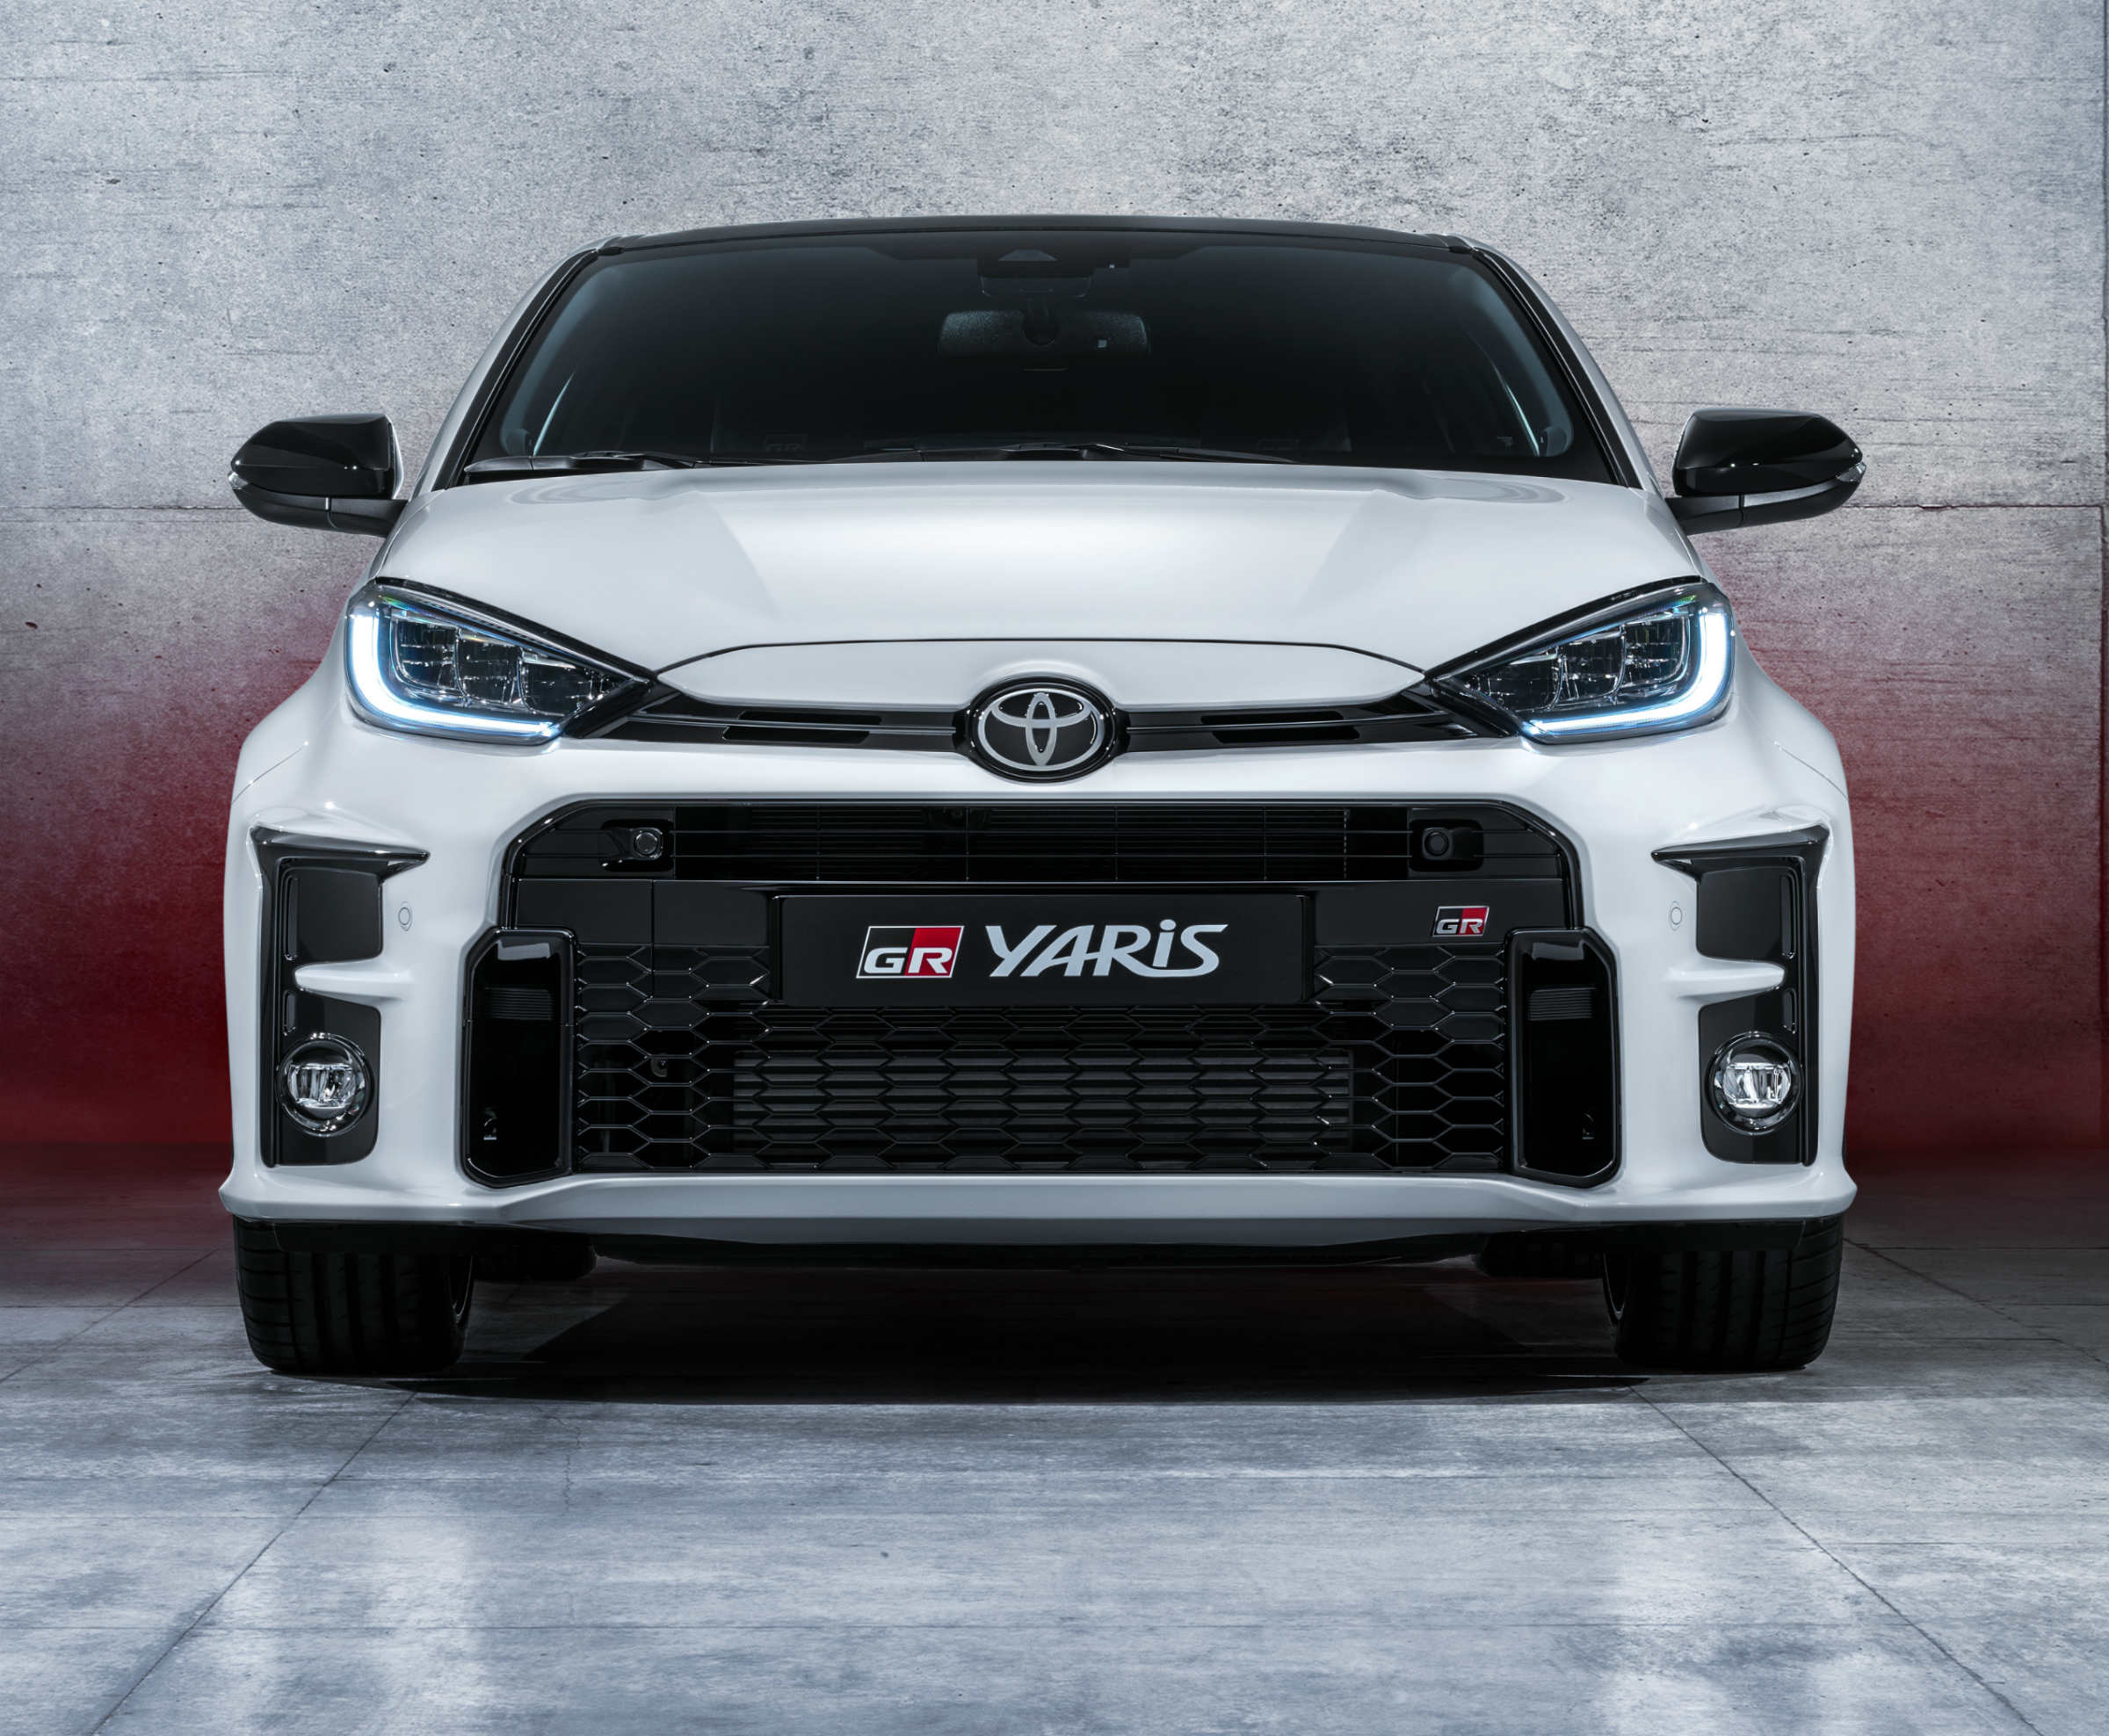 Toyota GR Yaris wyceniona. Cena zaczyna się od 143 900 zł